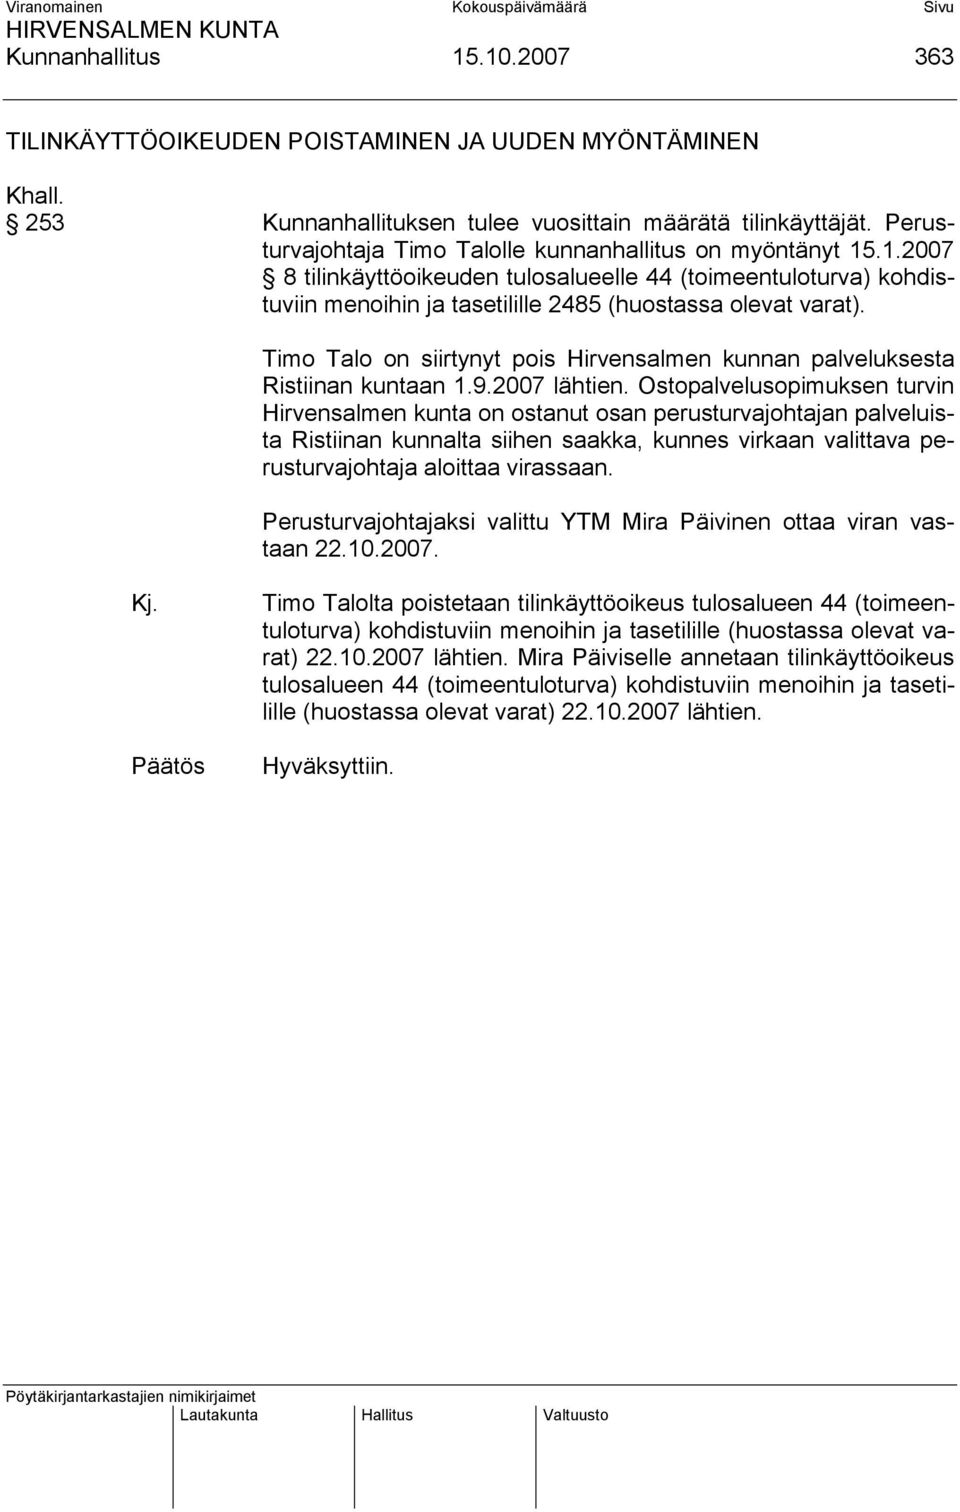 Timo Talo on siirtynyt pois Hirvensalmen kunnan palveluksesta Ristiinan kuntaan 1.9.2007 lähtien.